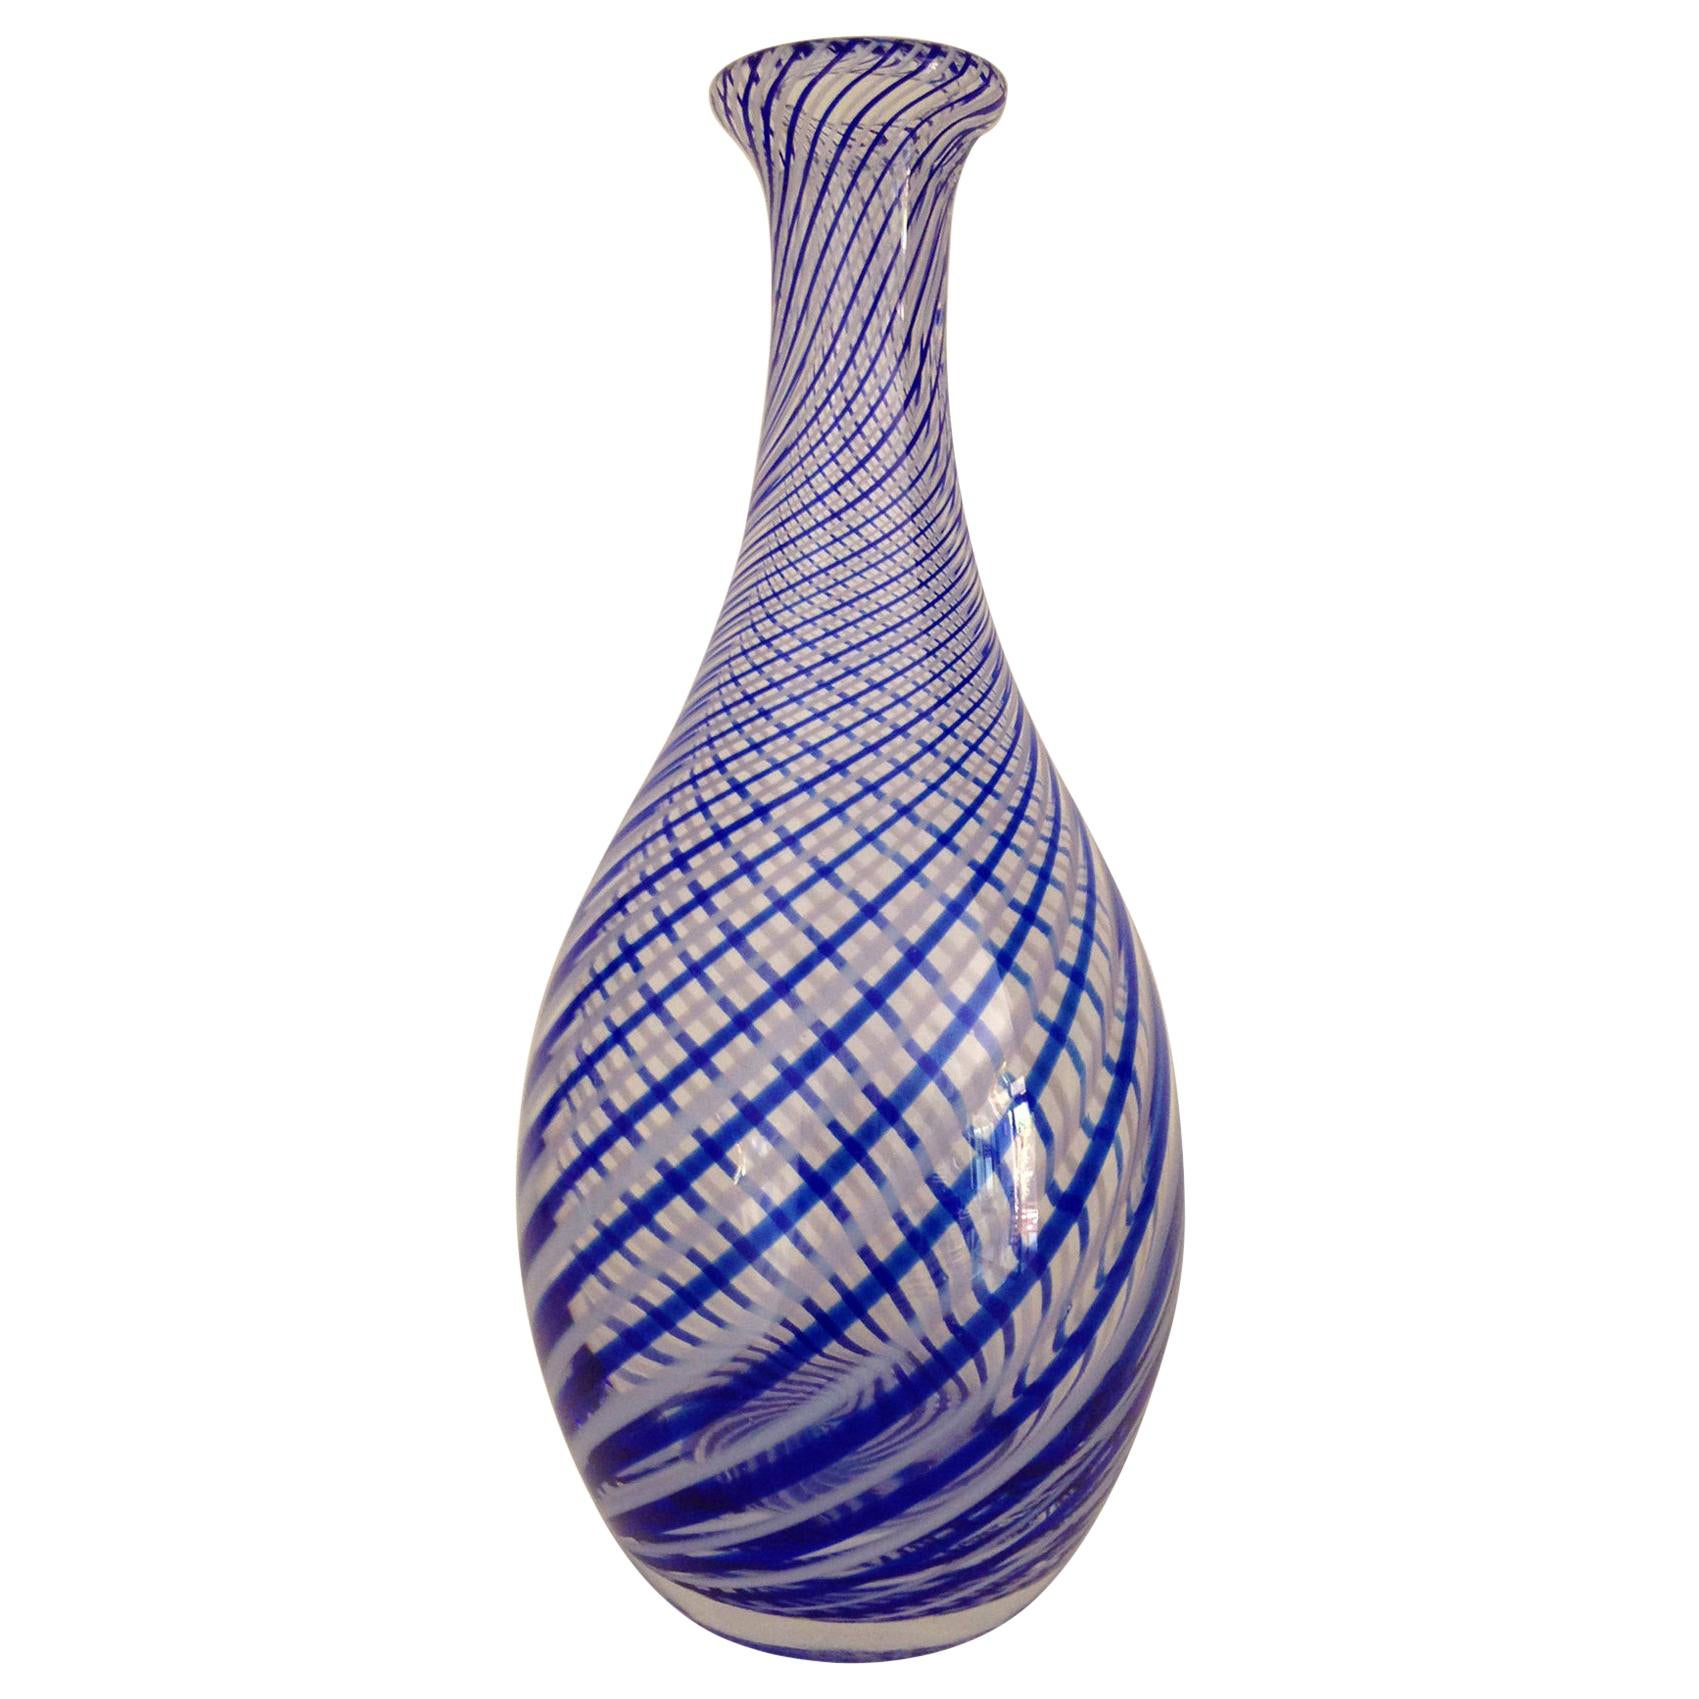 Italian Murano Art Glass Blue and White Striped Vase, circa 1970 For Sale